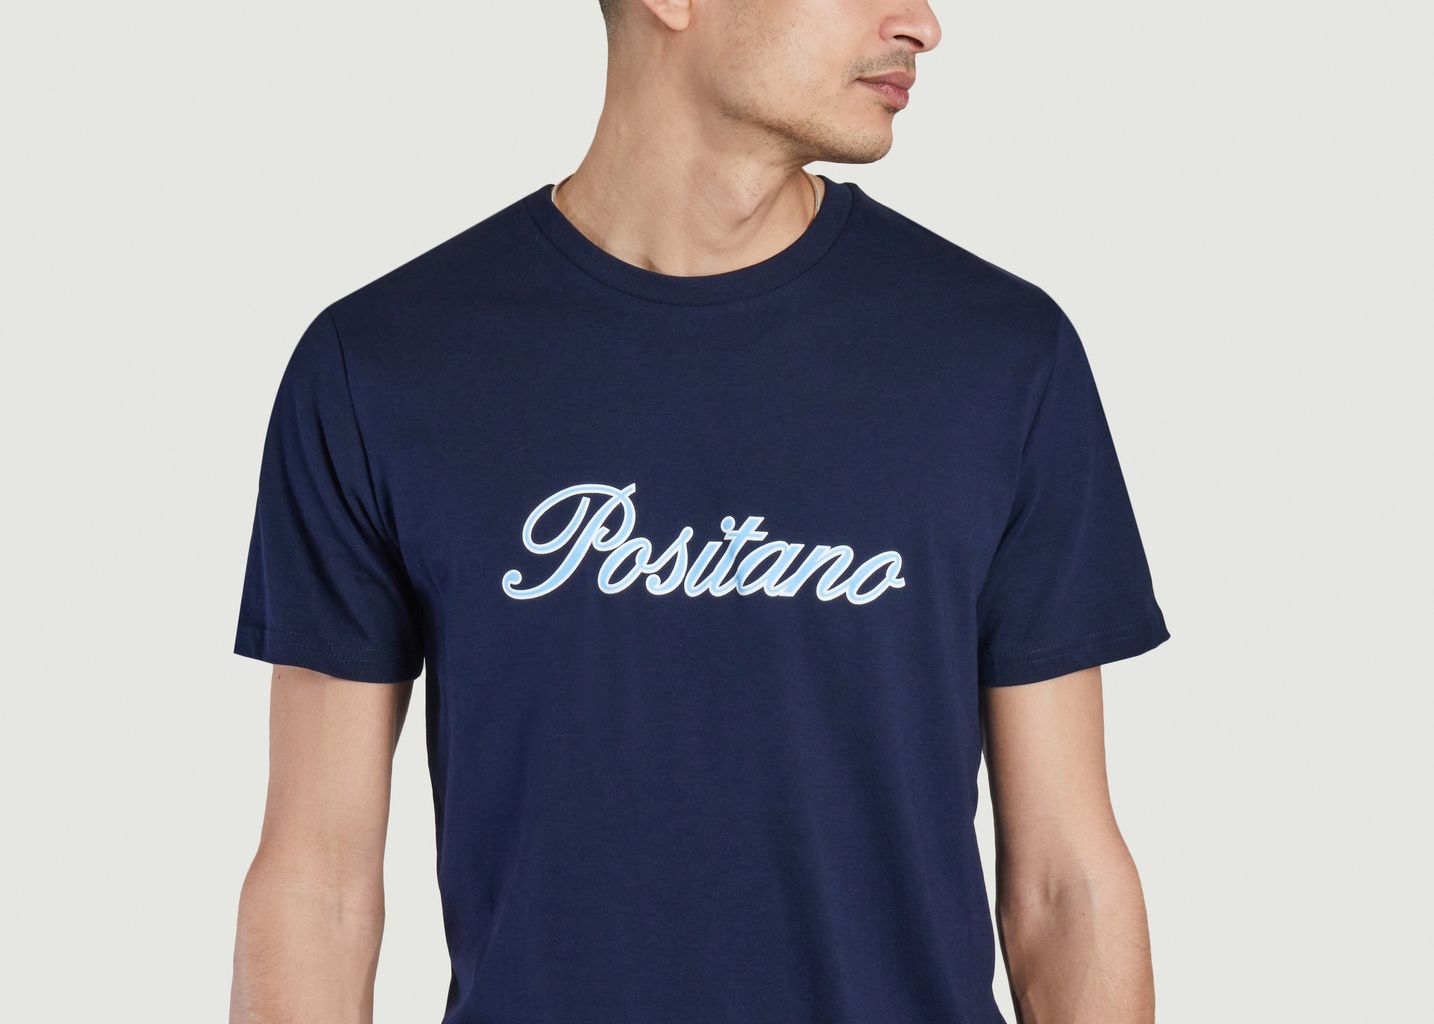 Tshirt Positano Italic - Harmony